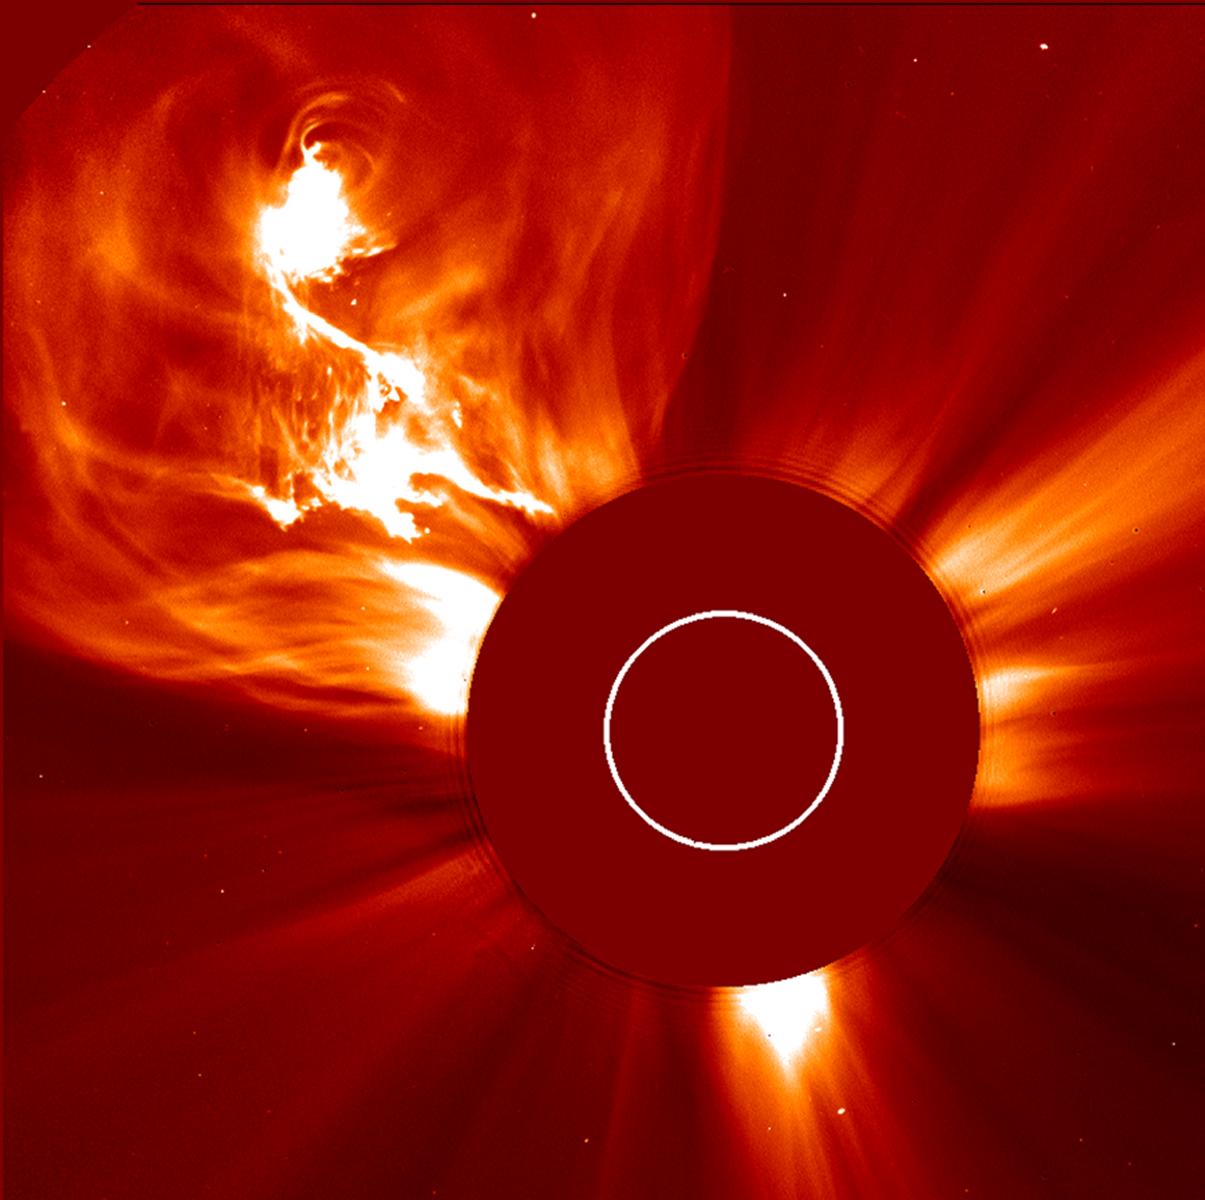 CME del Sole prodotta il 4 gennaio 2002. - Credits: NASA